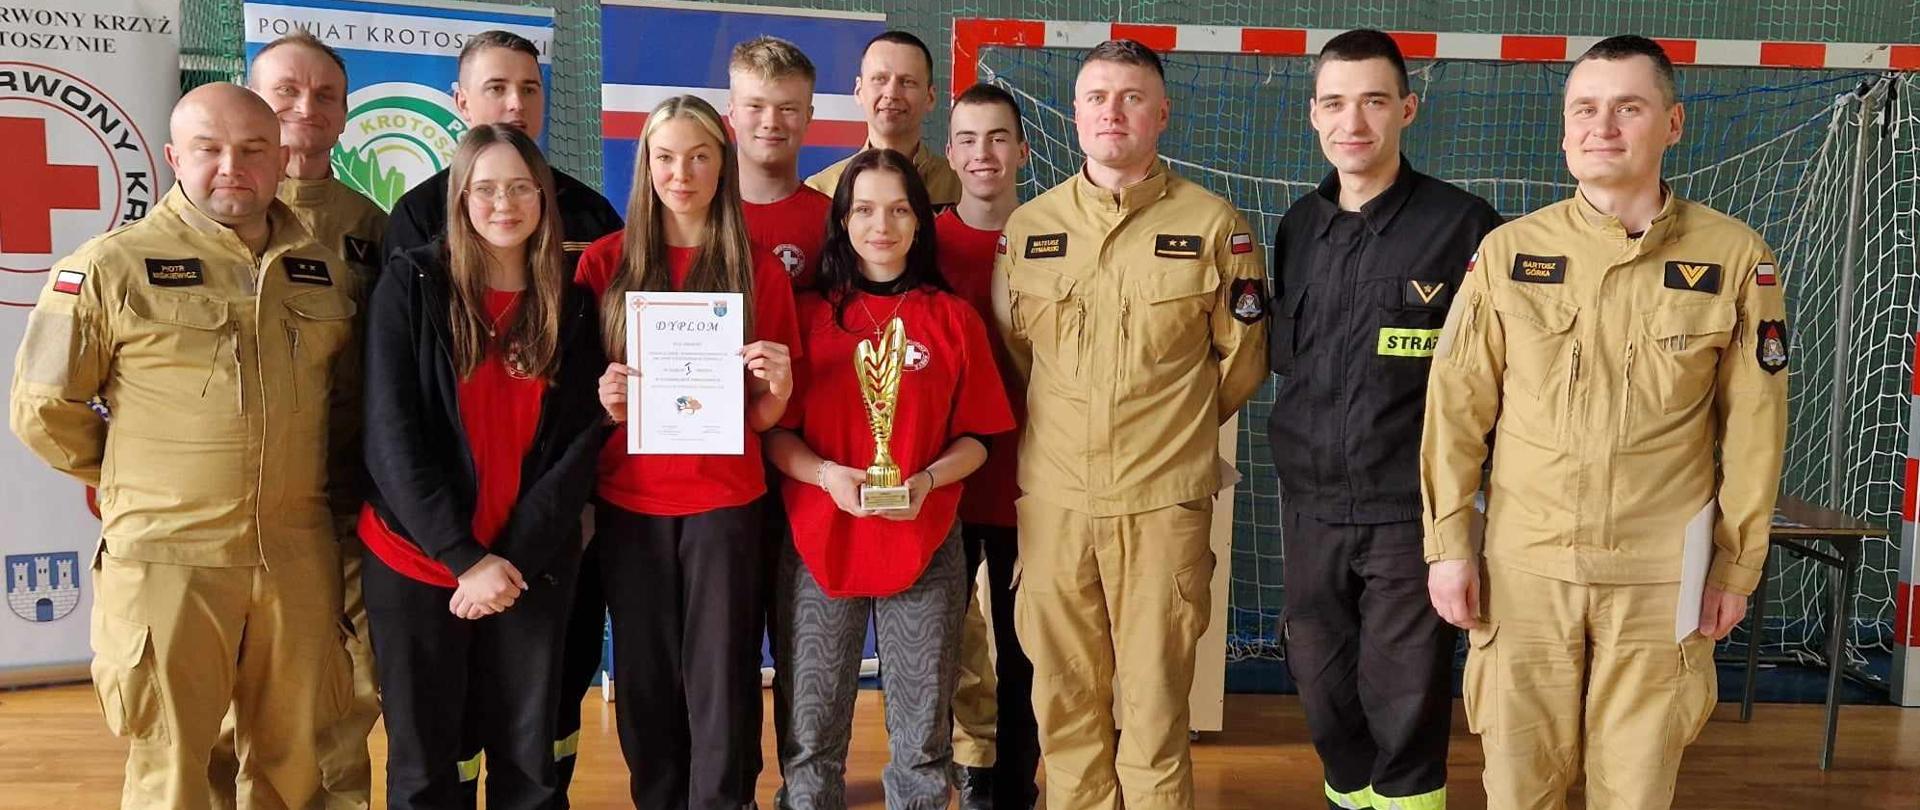 Powiatowe Mistrzostwa Pierwszej Pomocy. Na zdjęciu wygrana drużyna wraz z obsadą sędziowską, którą tworzą strażacy z komendy powiatowej. 